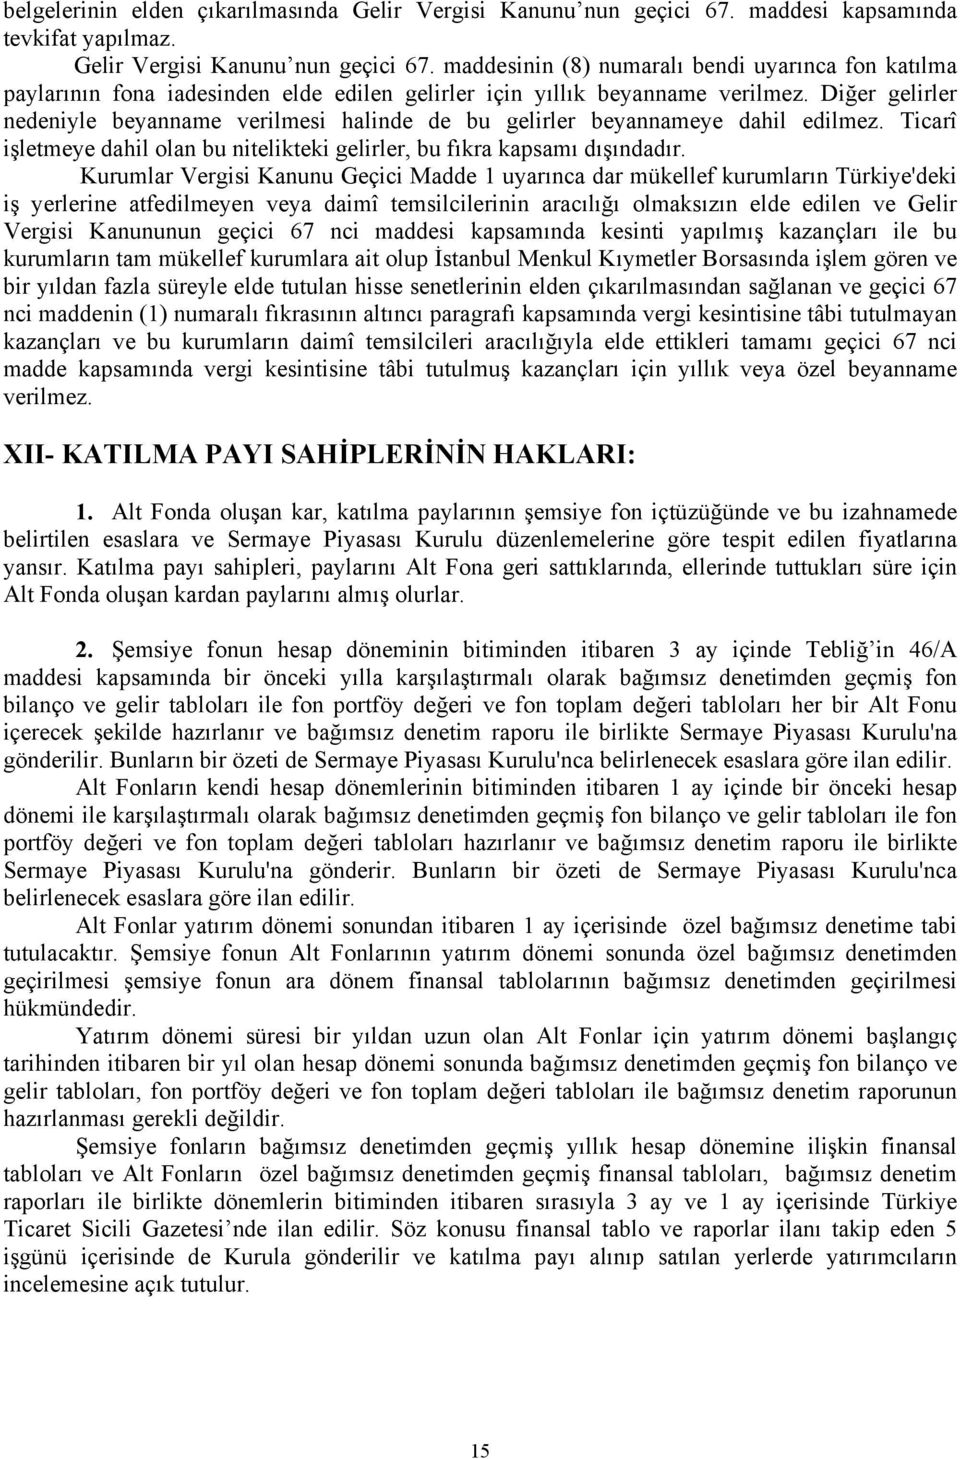 Kurumlar Vergisi Kanunu Geçici Madde 1 uyarınca dar mükellef kurumların Türkiye'deki iş yerlerine atfedilmeyen veya daimî temsilcilerinin aracılığı olmaksızın elde edilen ve Gelir Vergisi Kanununun